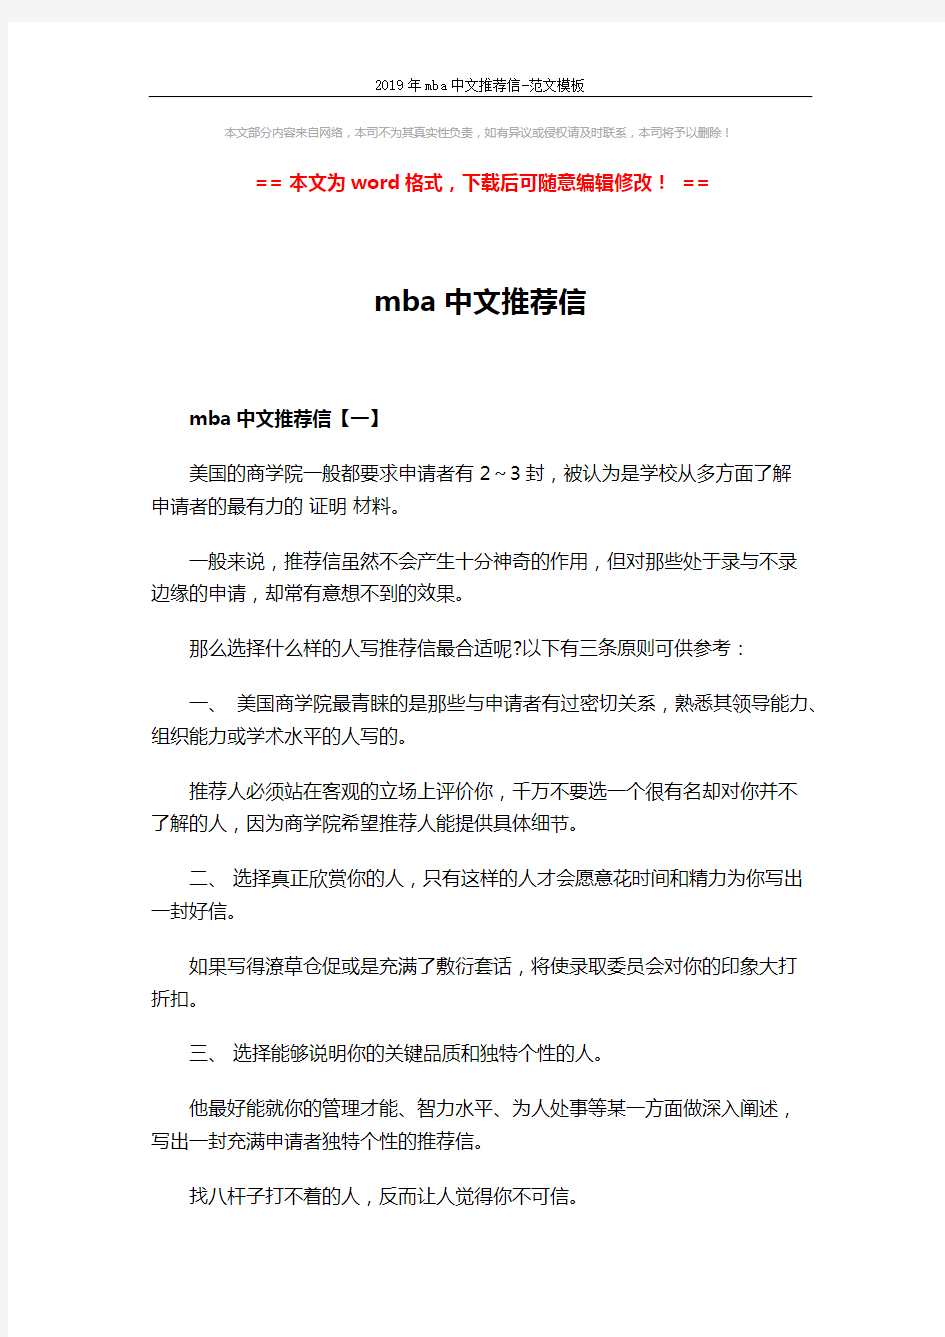 2019年mba中文推荐信-范文模板 (4页)